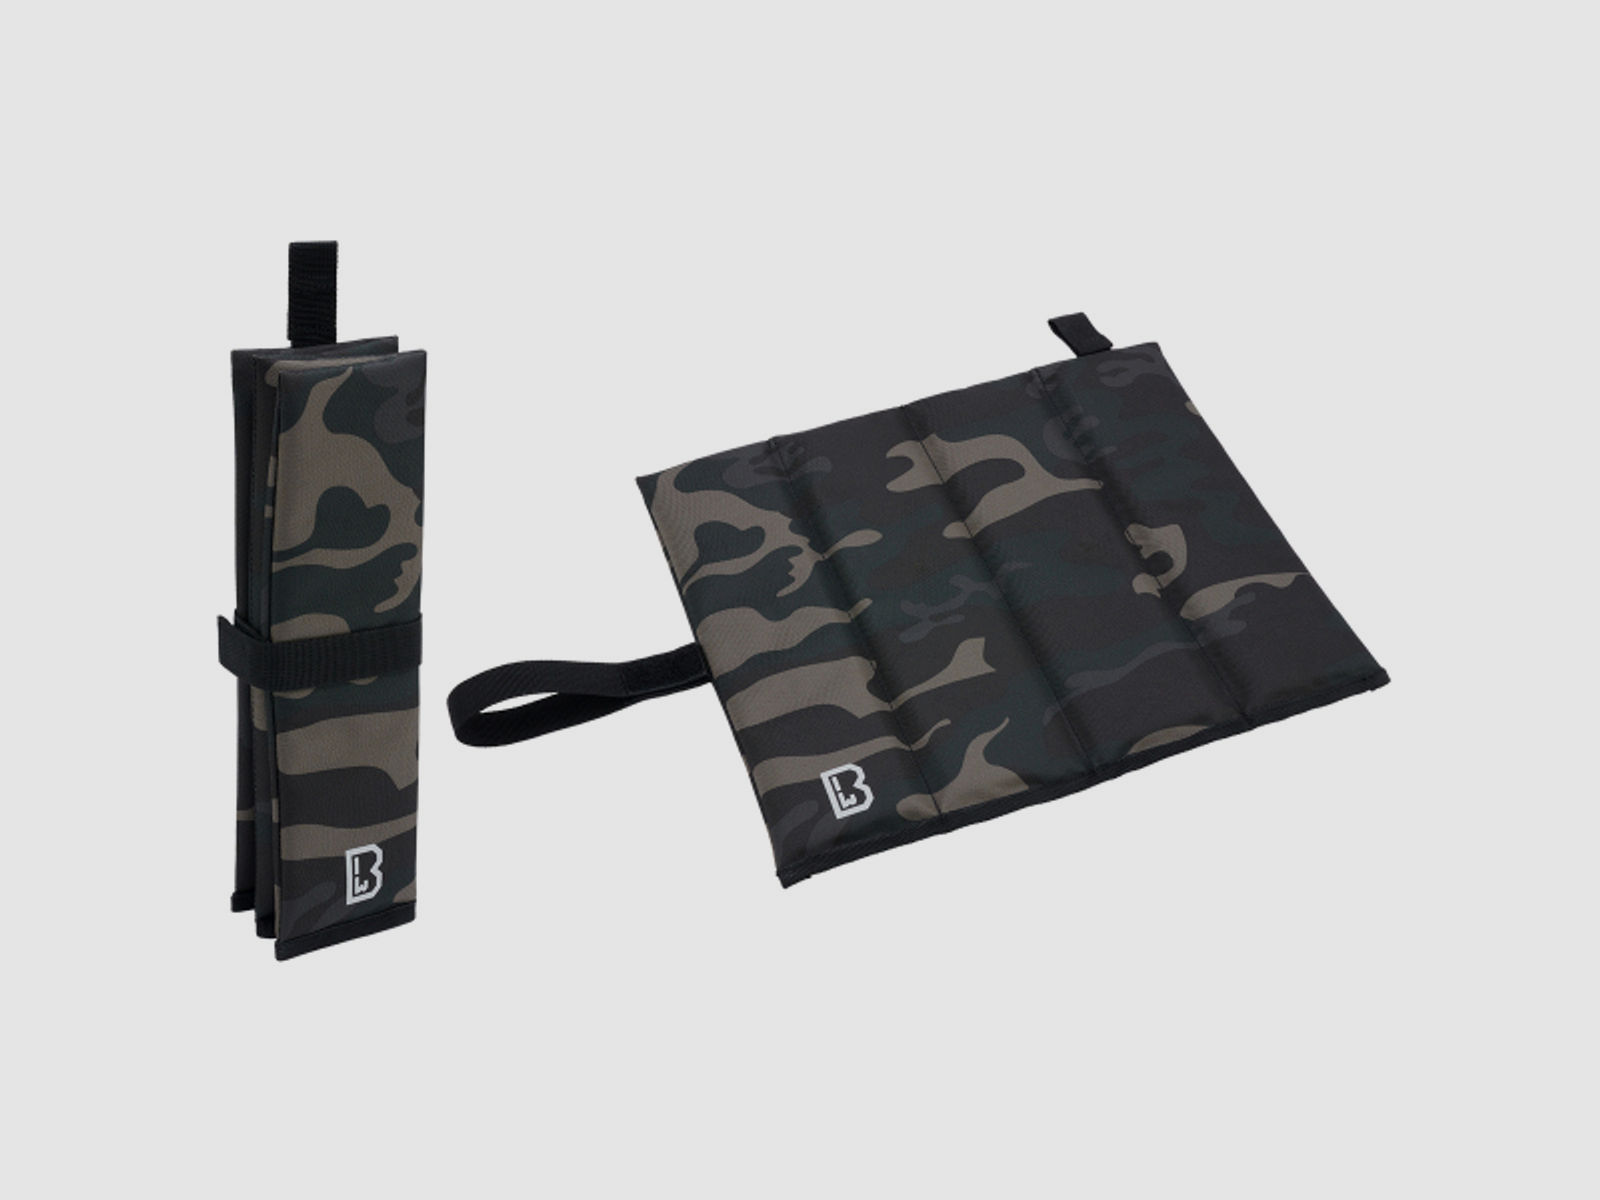 Sitzmatte - gefaltet - Dark Camouflage - 31 cm x 9 cm x 6 cm